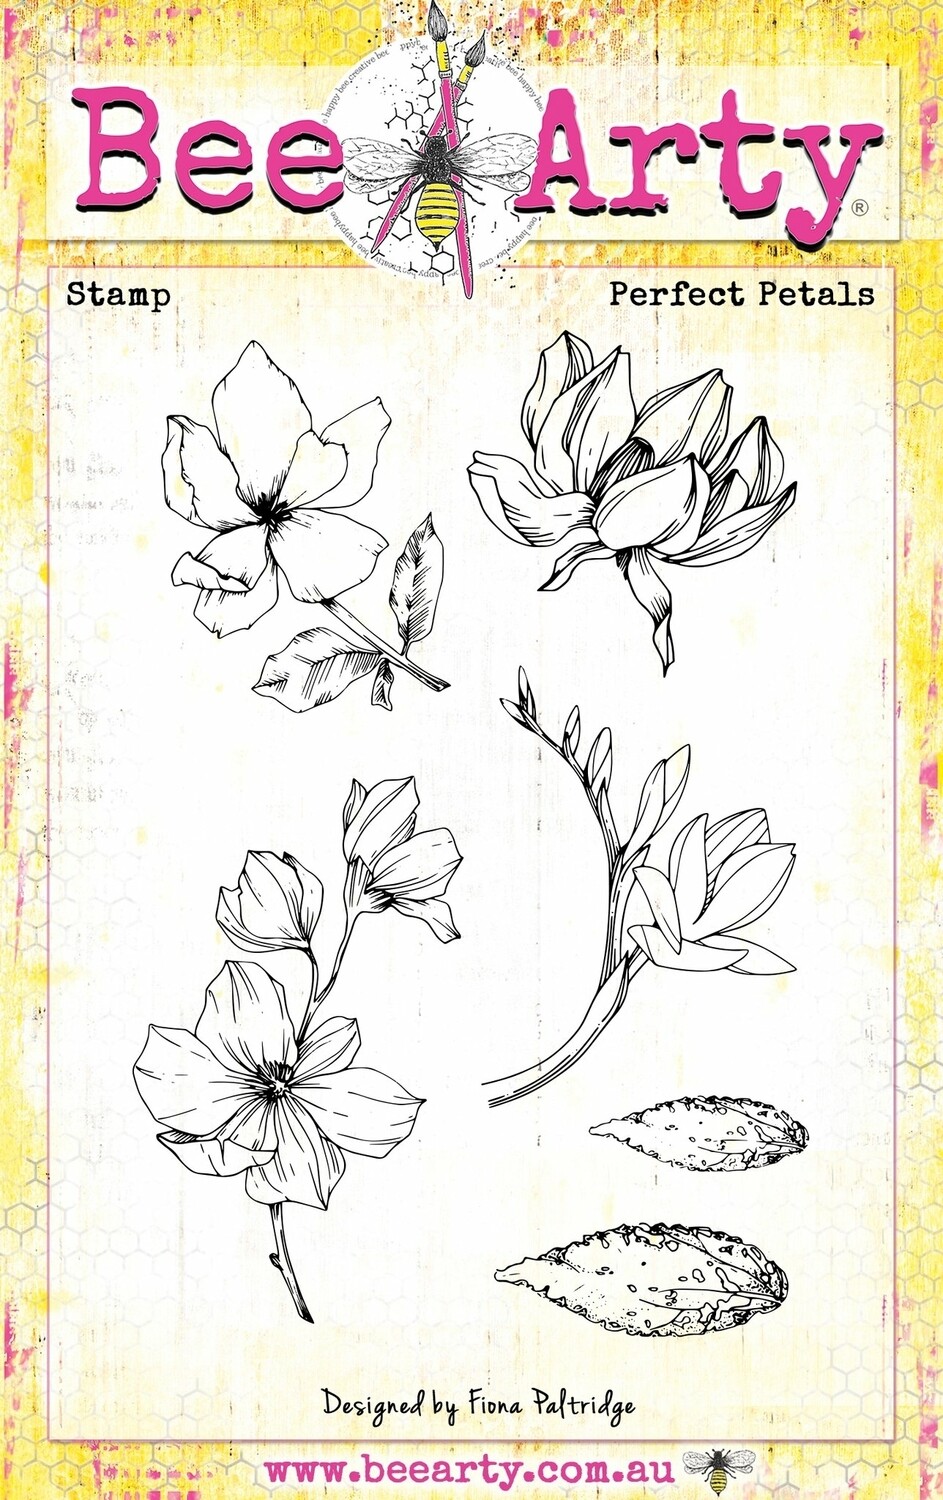 Perfect petals stamp set